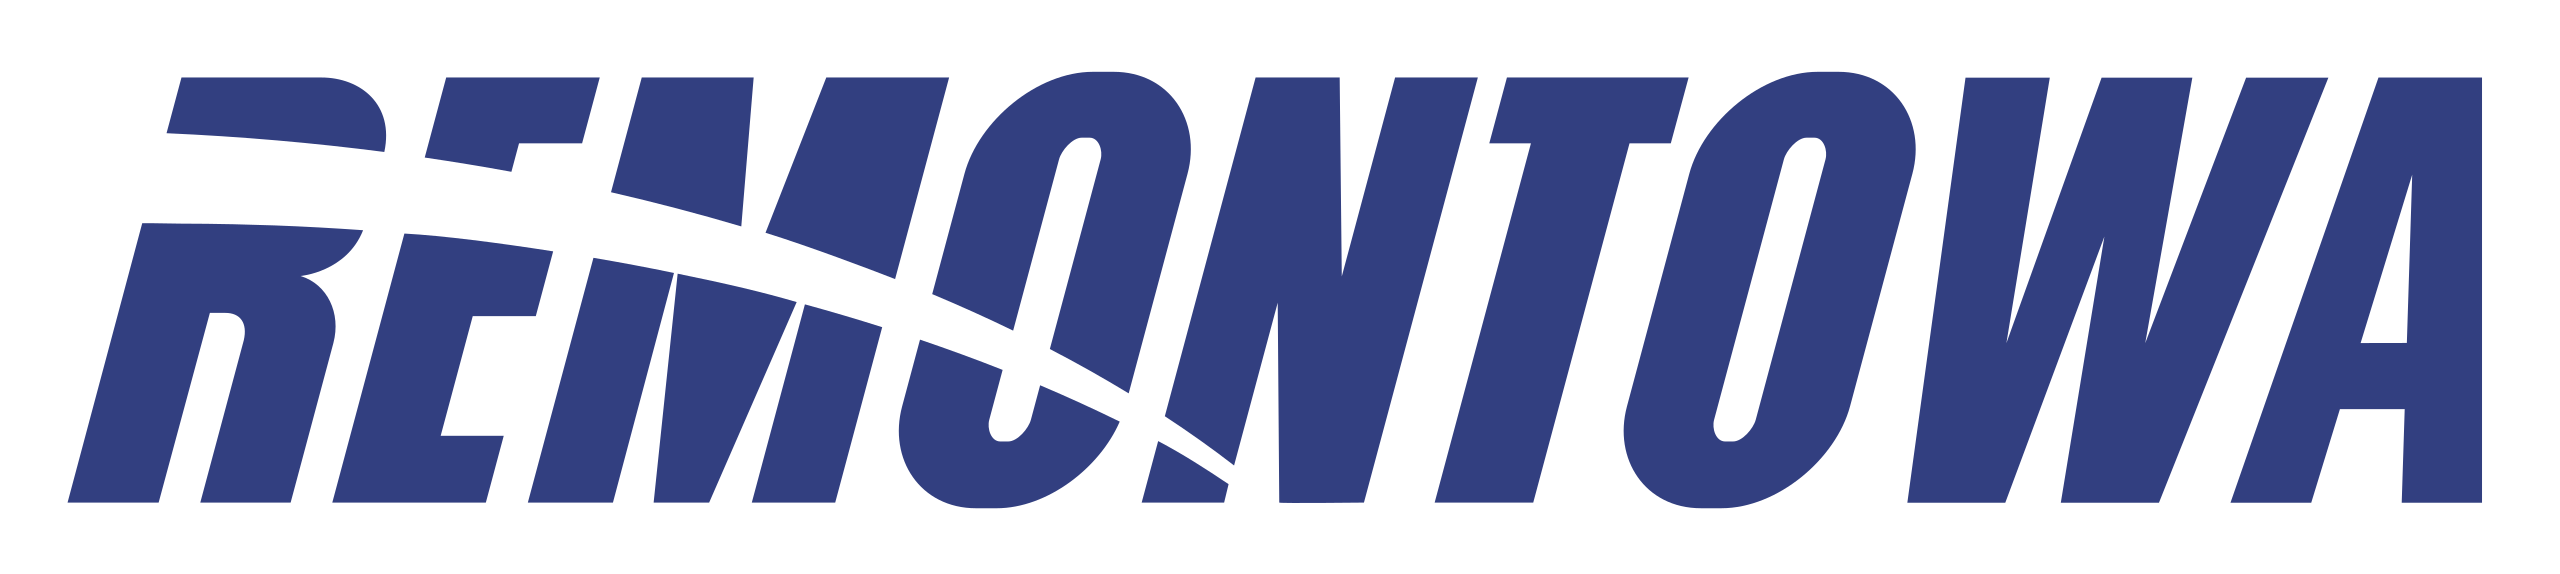 Remontowa logo.